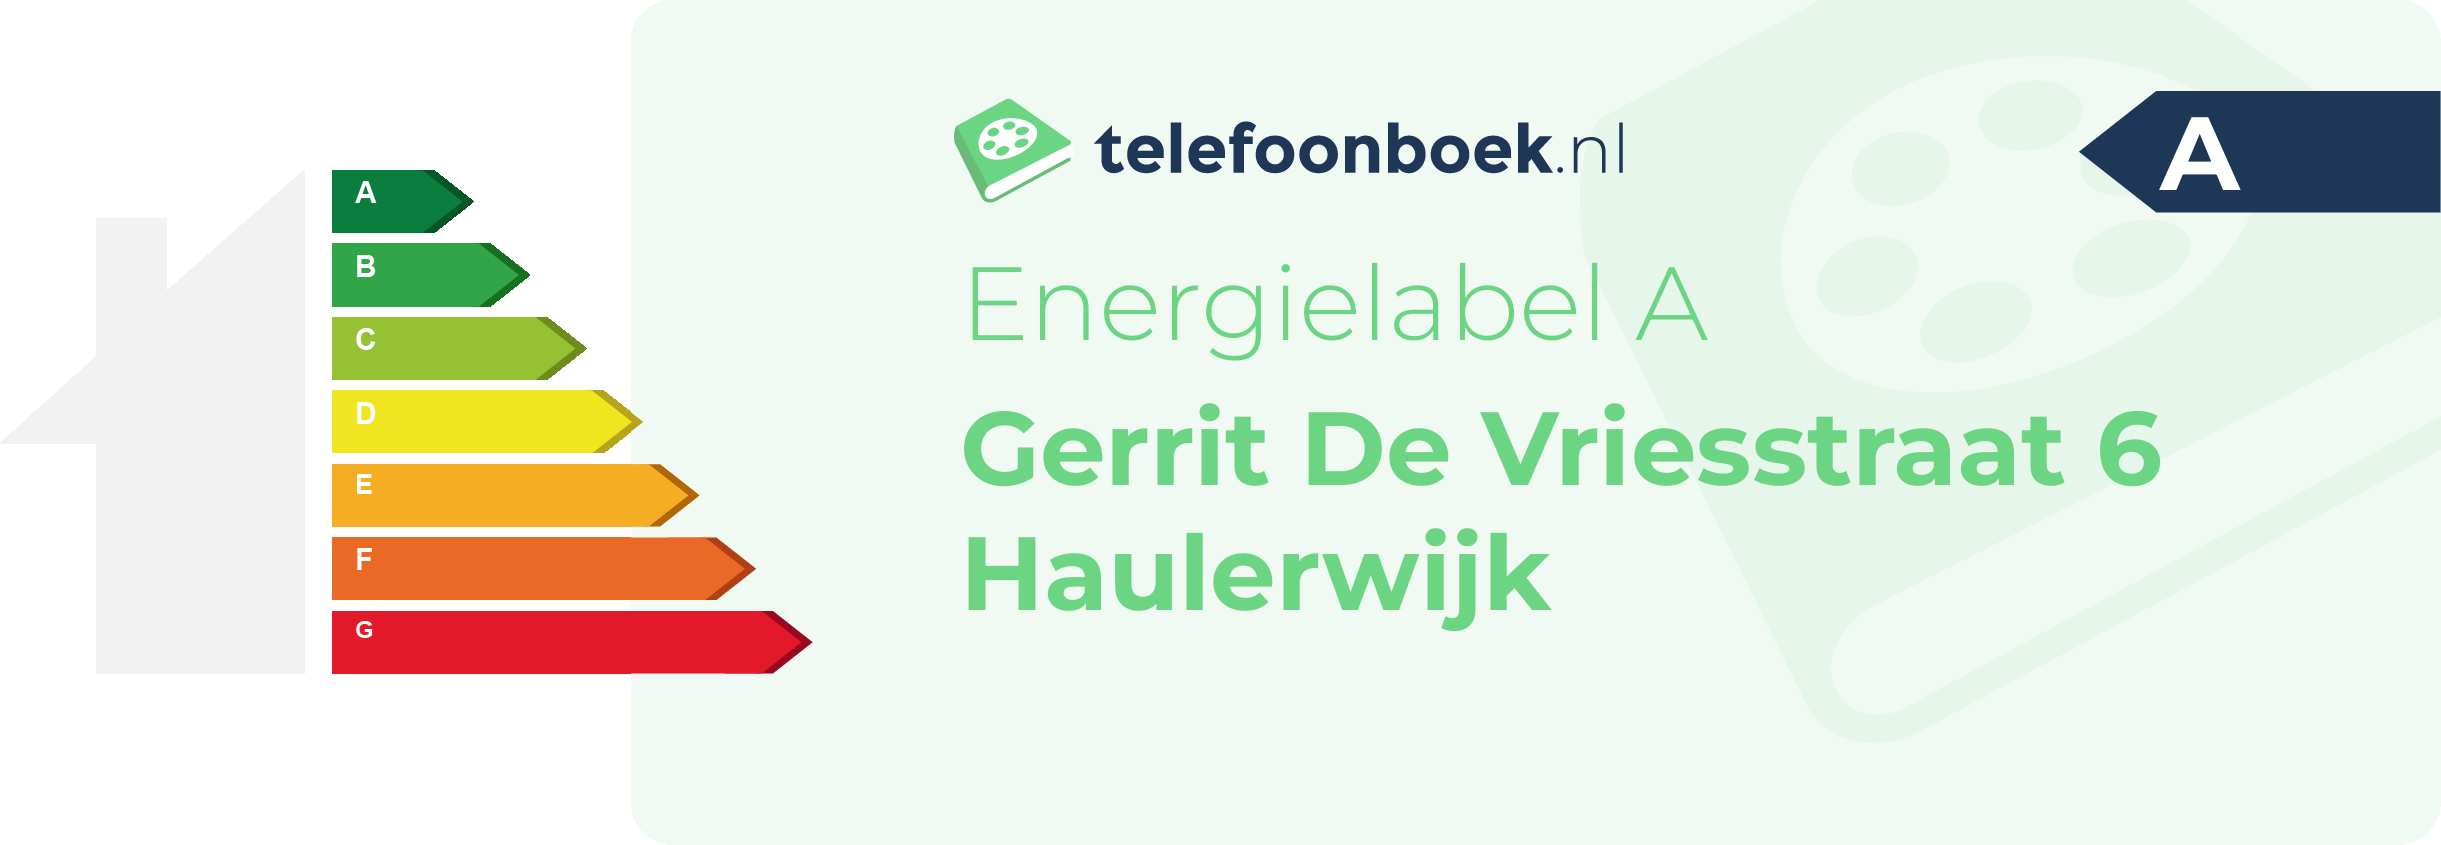 Energielabel Gerrit De Vriesstraat 6 Haulerwijk